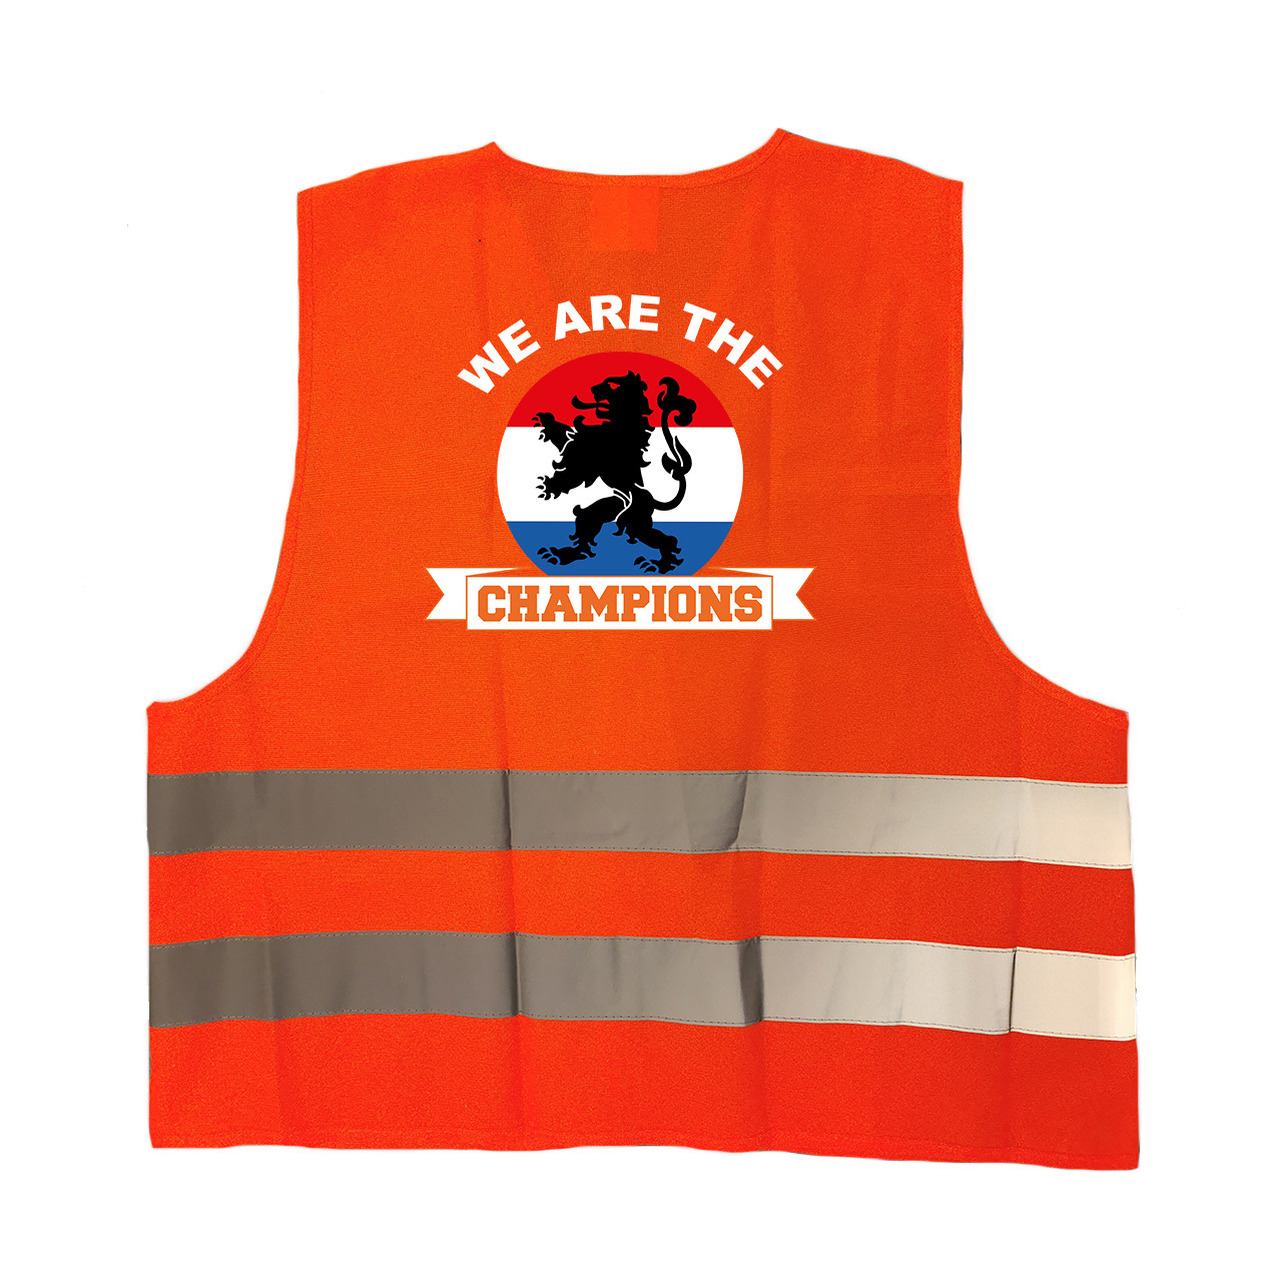 We are the champions oranje veiligheidshesje EK - WK supporter outfit voor volwassenen